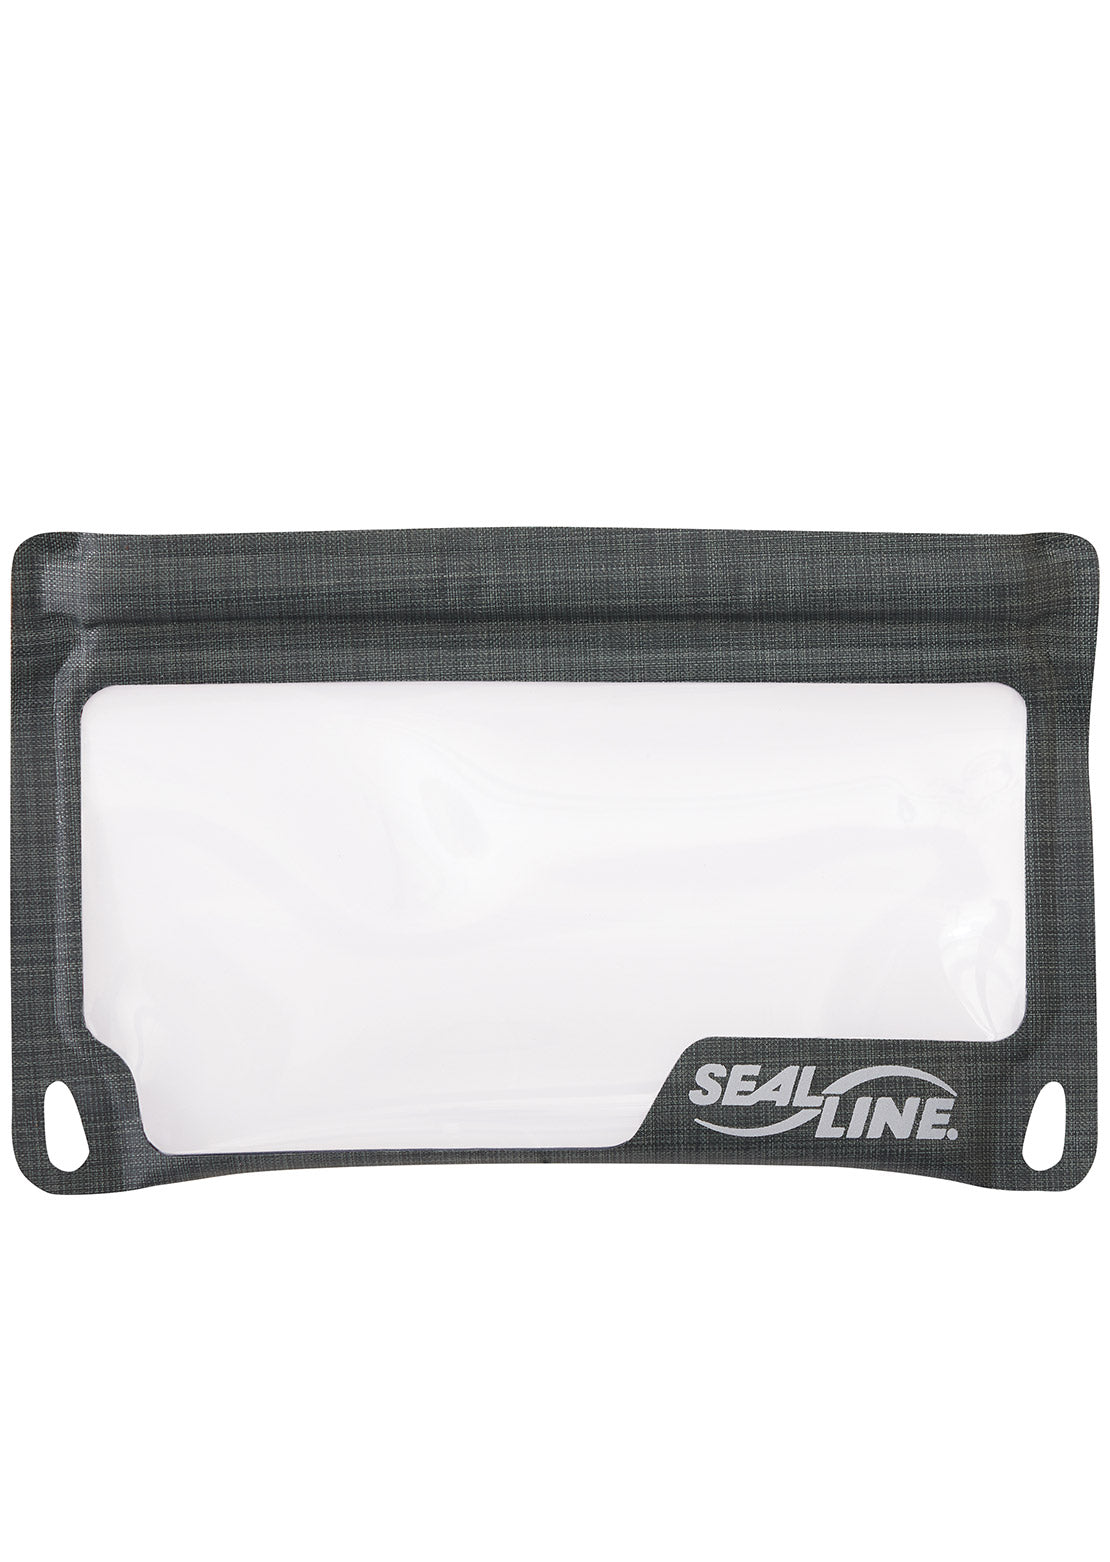 SealLine E-Case Submersible Protection Bag Small Gray